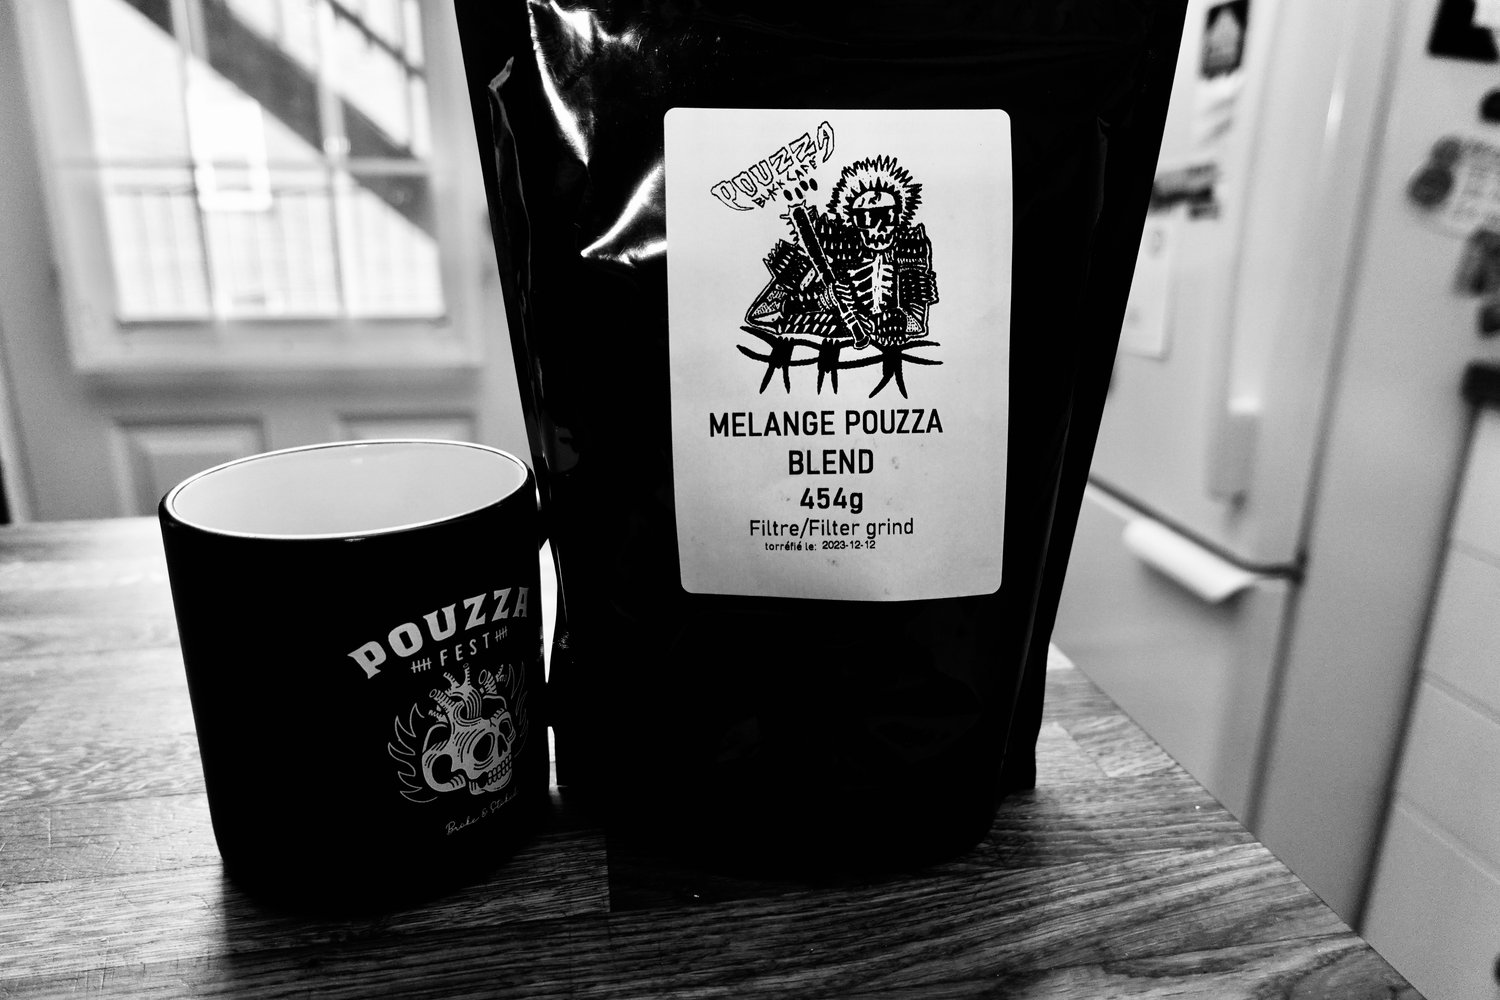 Image of  "Black Café" - Pouzza Blend - Sac de café / Coffee bag - 454G